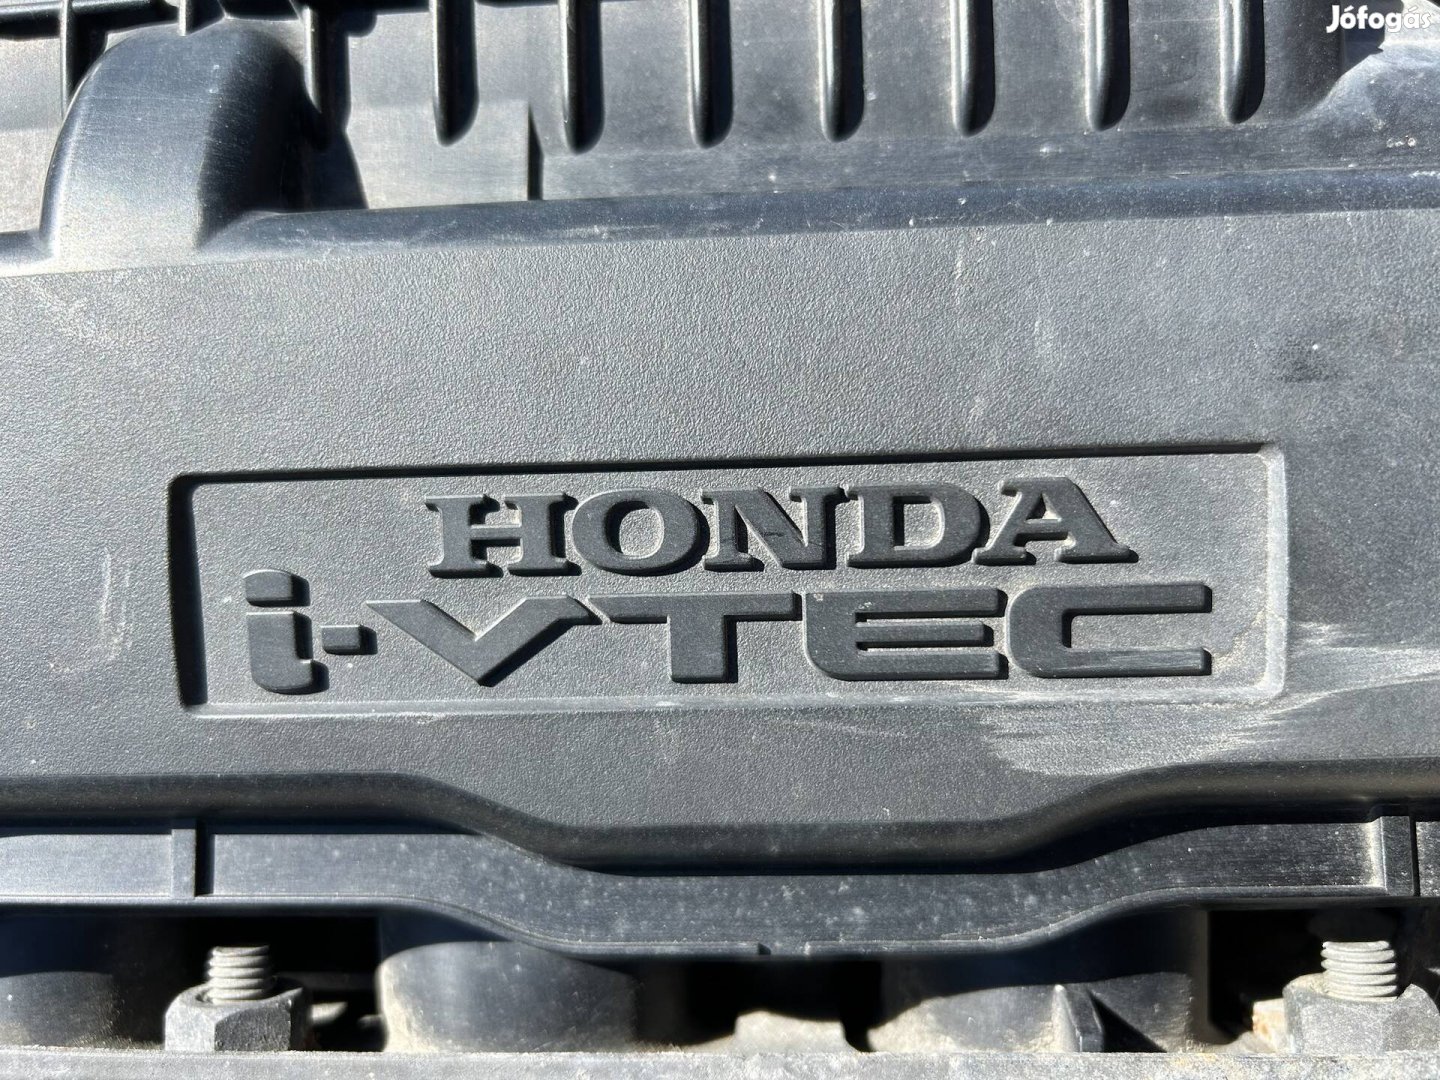 Honda L13z1 motor